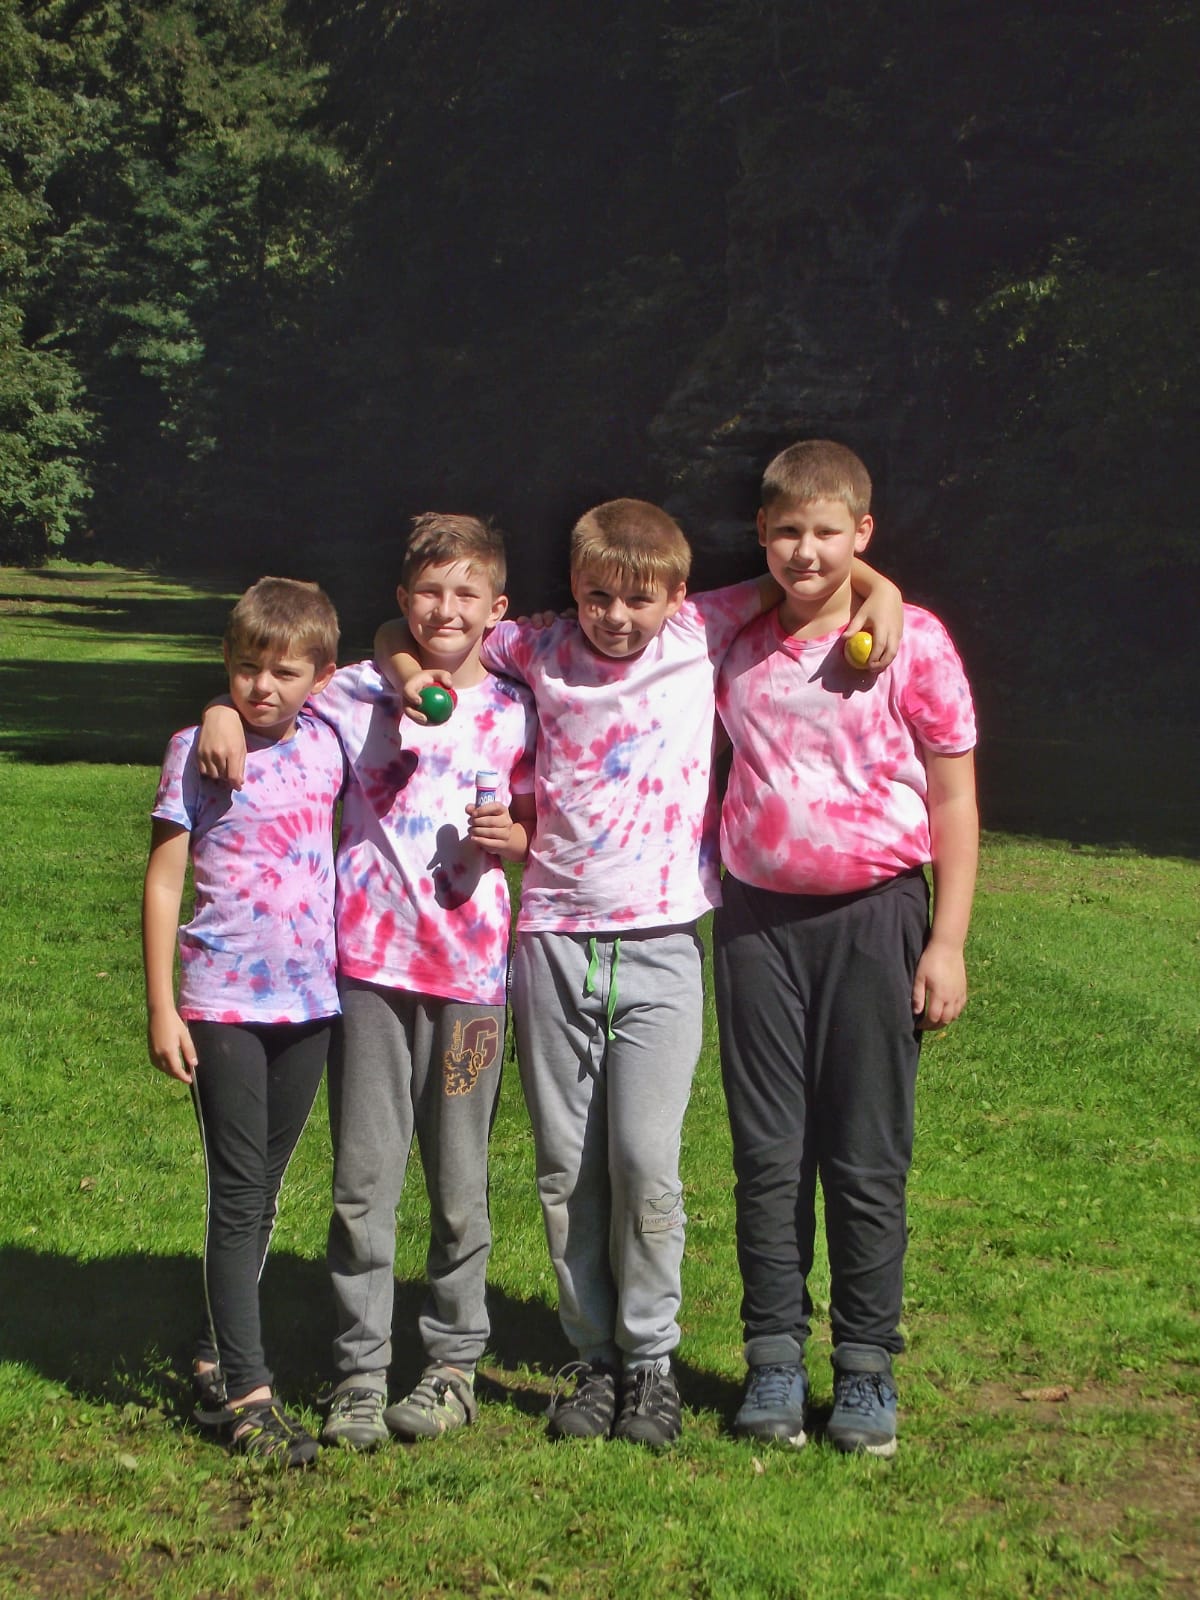 Děti na letním kutilském táboře se fotí v přírodě a mají batikovaná trička.